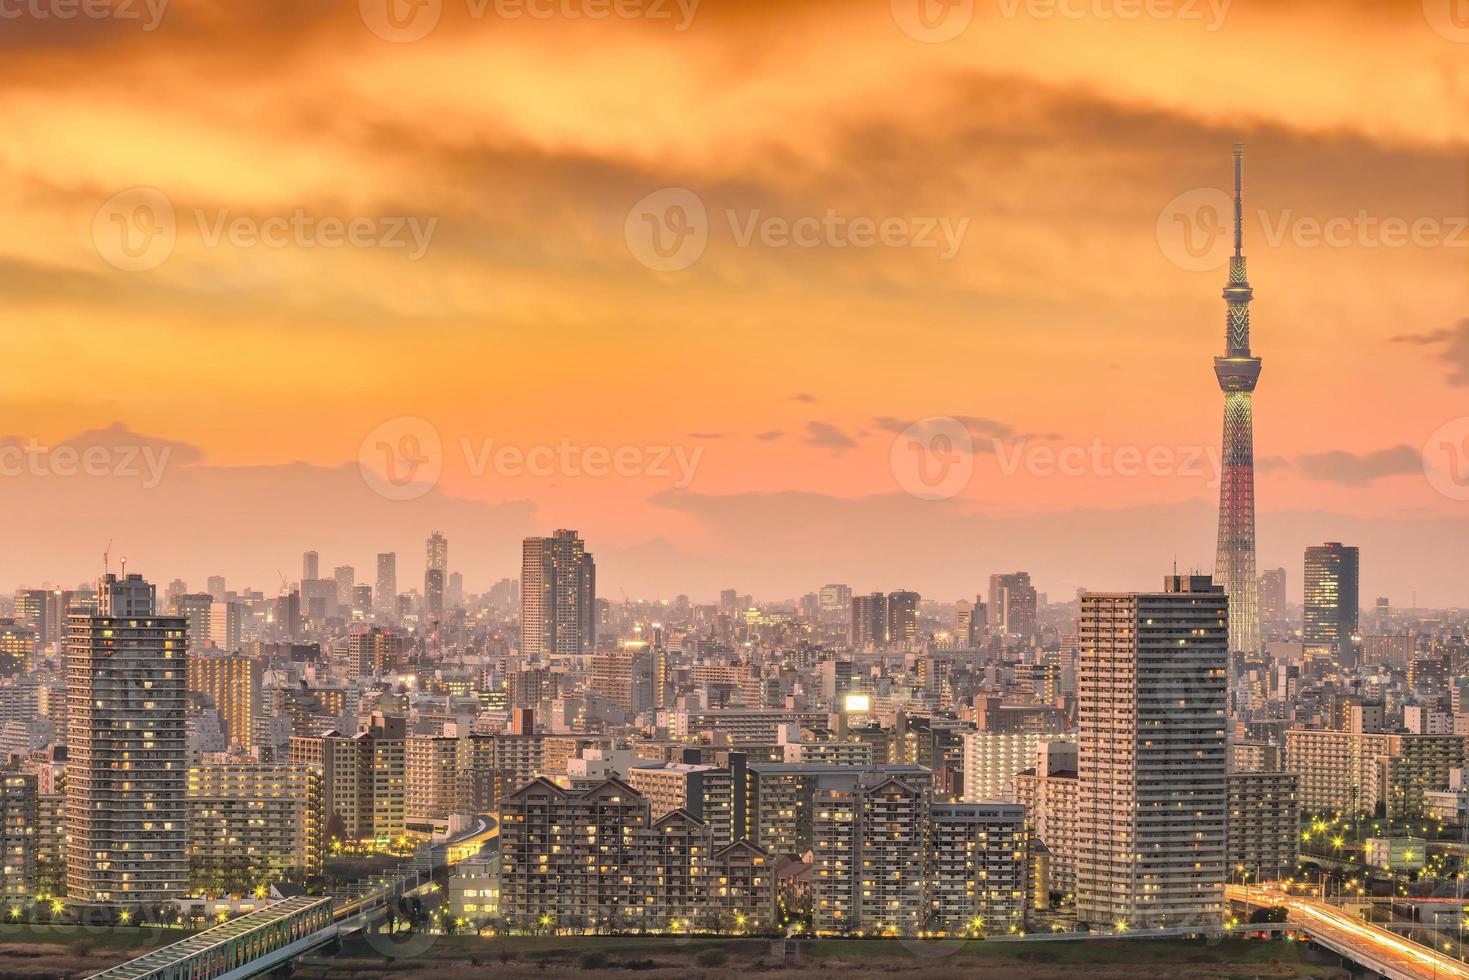 skyline van de stad tokyo bij zonsondergang foto